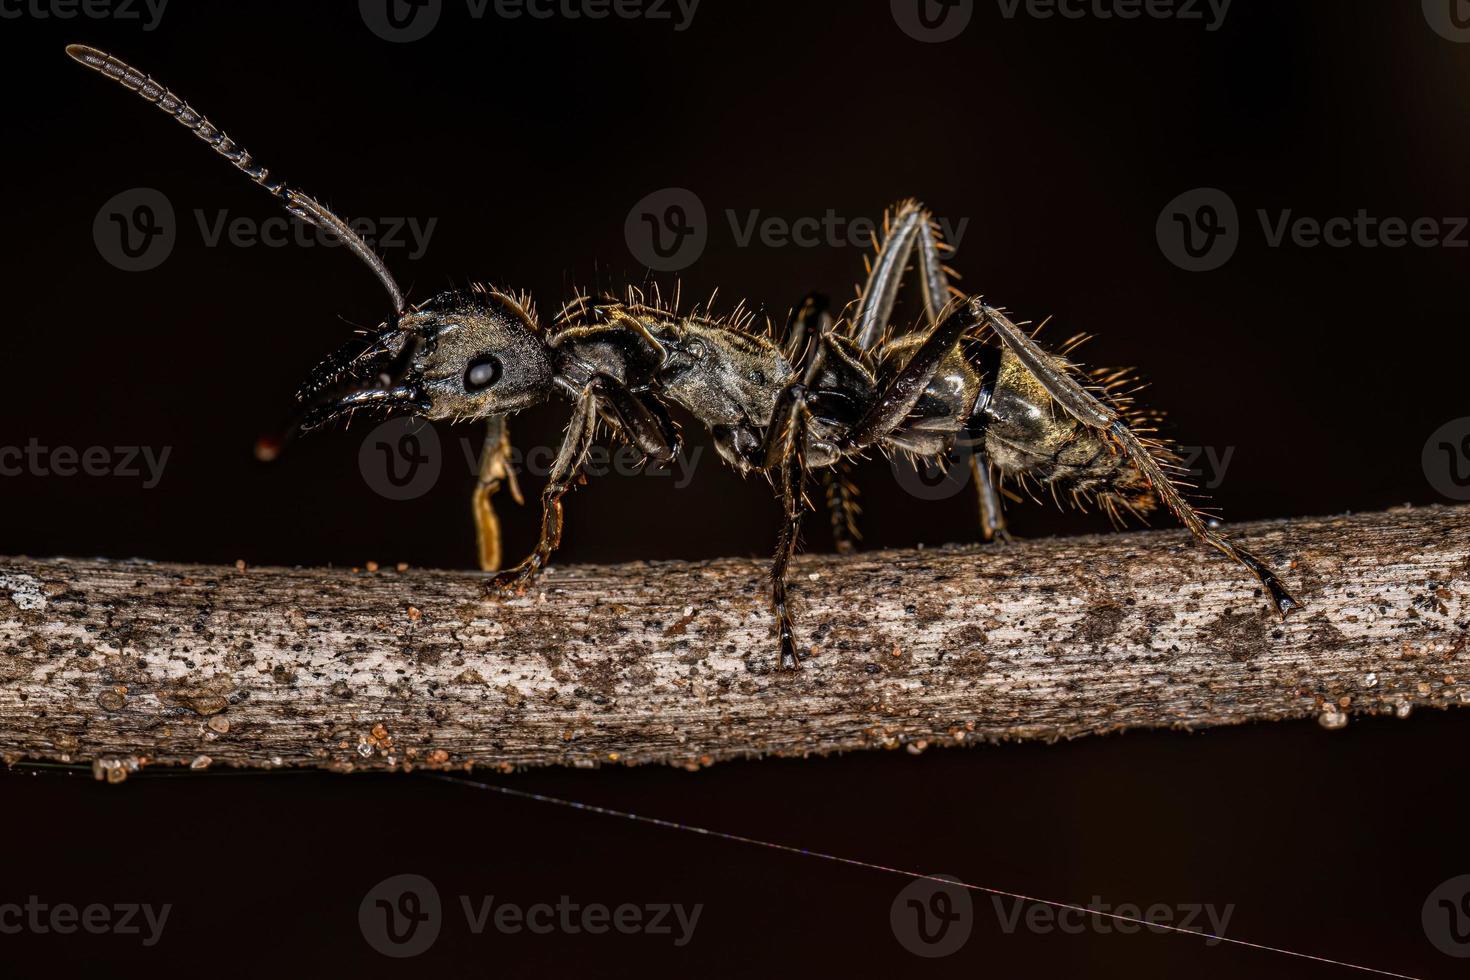 fourmi ponérine femelle adulte photo